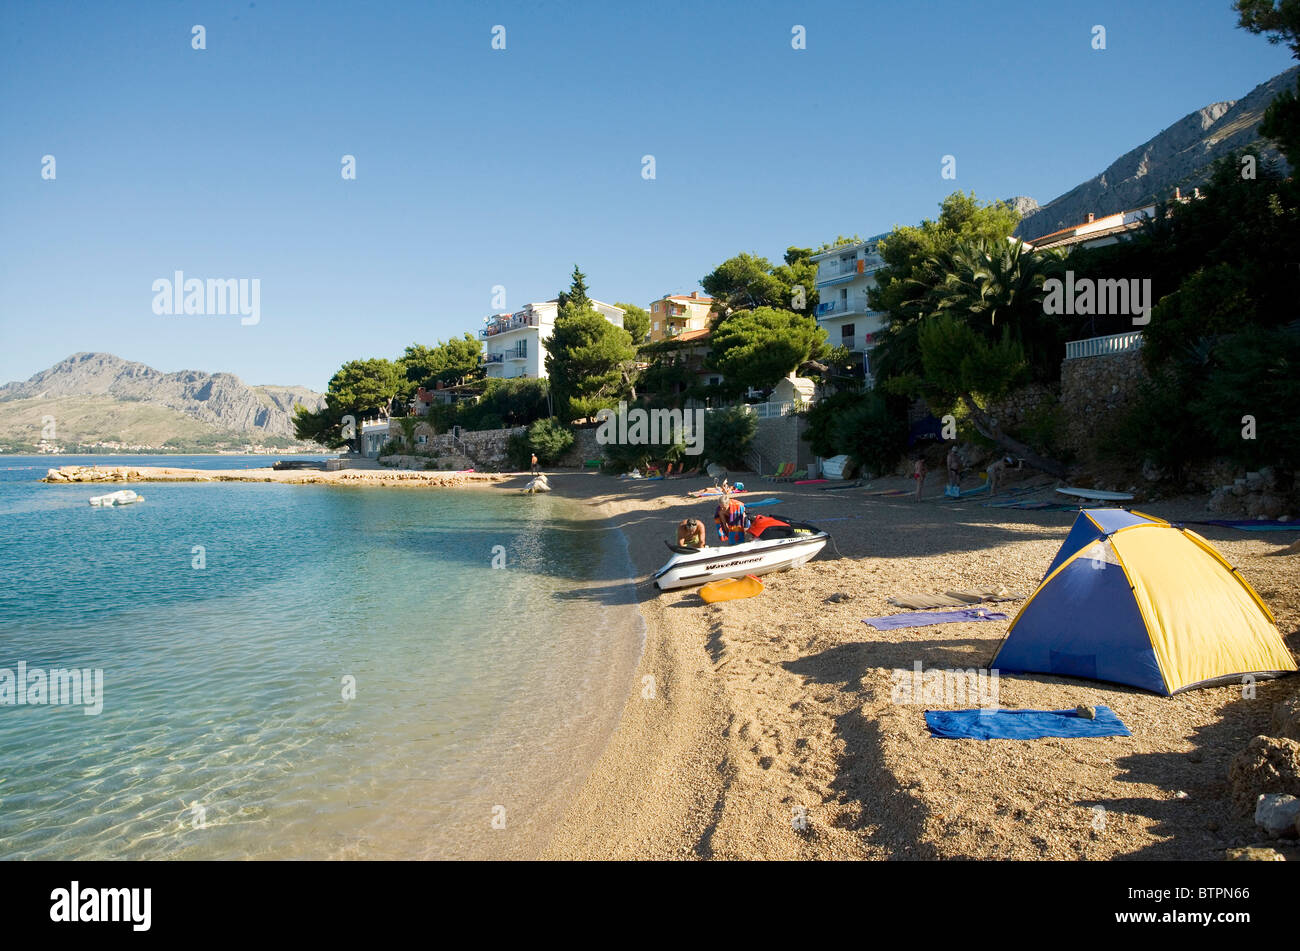 Une scène de plage près de la ville d'Omis, Croatie Banque D'Images